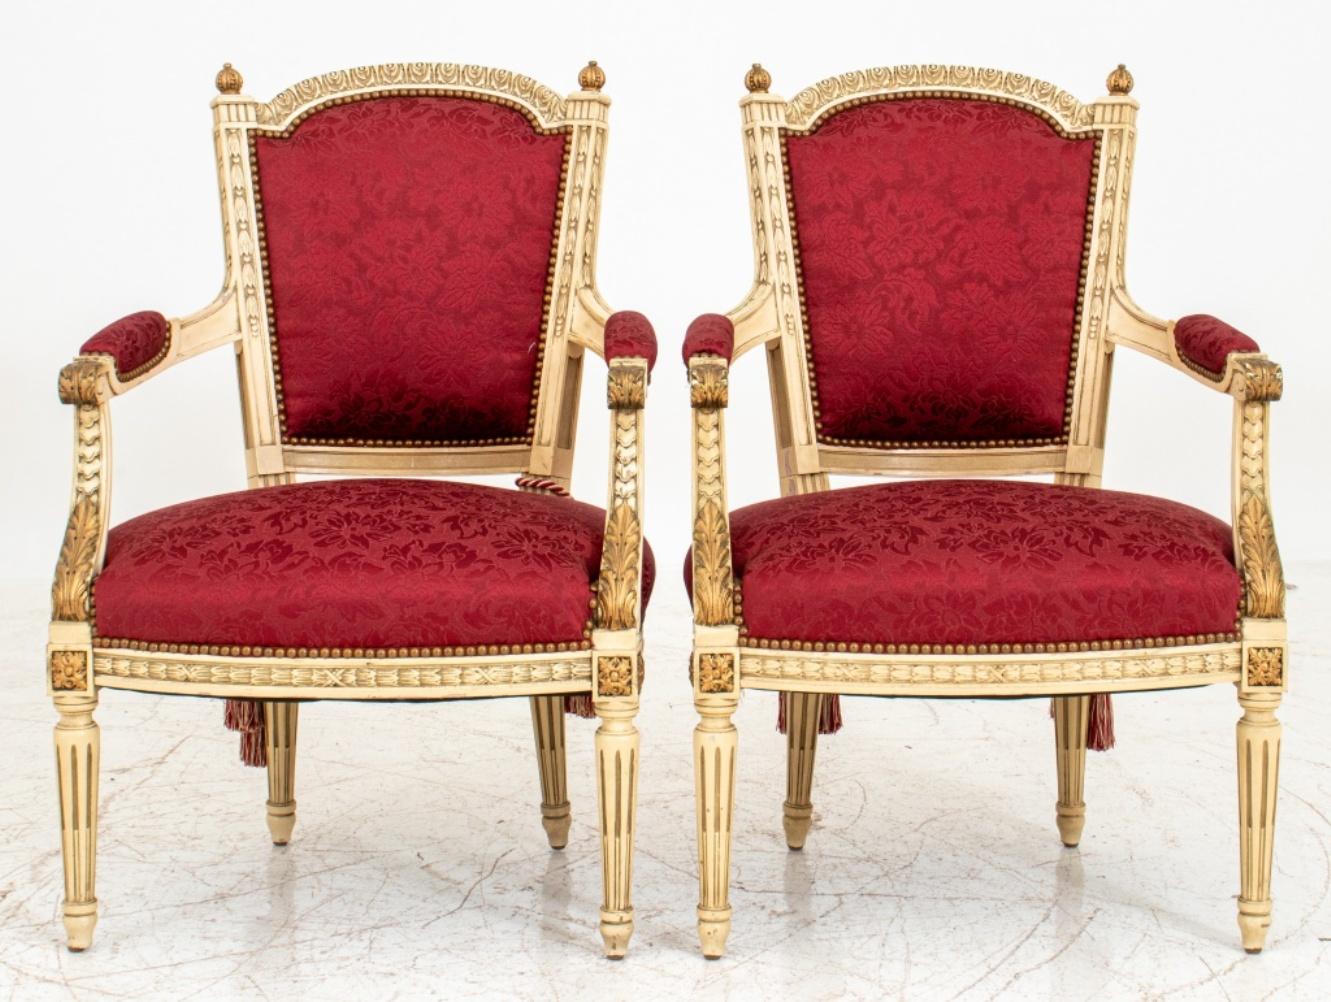 Zwei mit rotem Damast gepolsterte, gold- und weißbemalte Armlehnstühle oder fauteuils de la reine en cabriolet im Louis-XVI-Stil, mit gewölbten Kammschienen und vergoldeten Endstücken über gepolsterten Rückenlehnen und nach unten geschwungenen,